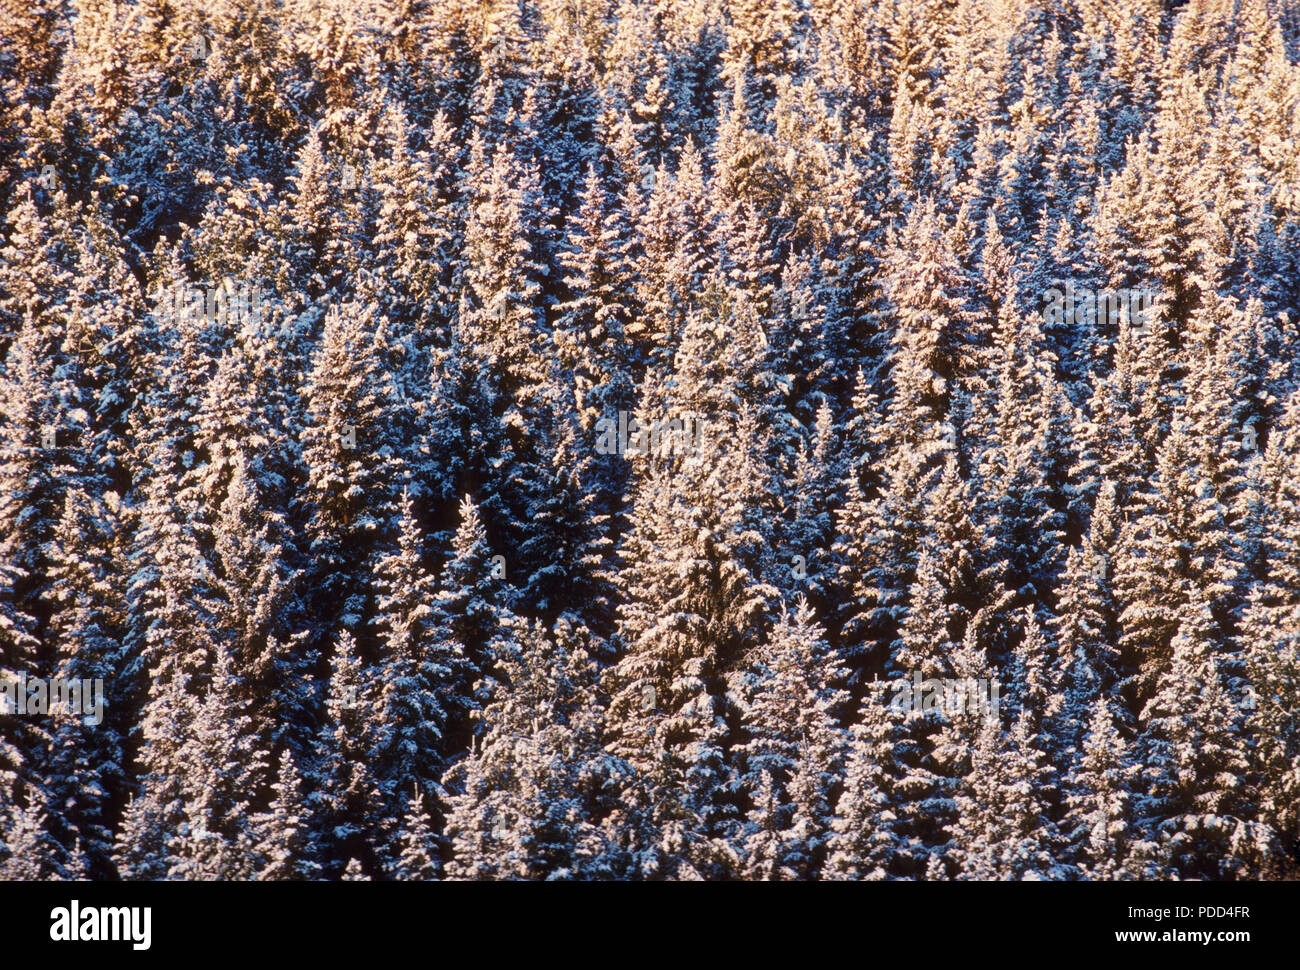 La forêt boréale, la taïga, forêt de conifères. L'épinette blanche, Picea glauca, arbres avec de la neige, de l'Alberta Banque D'Images